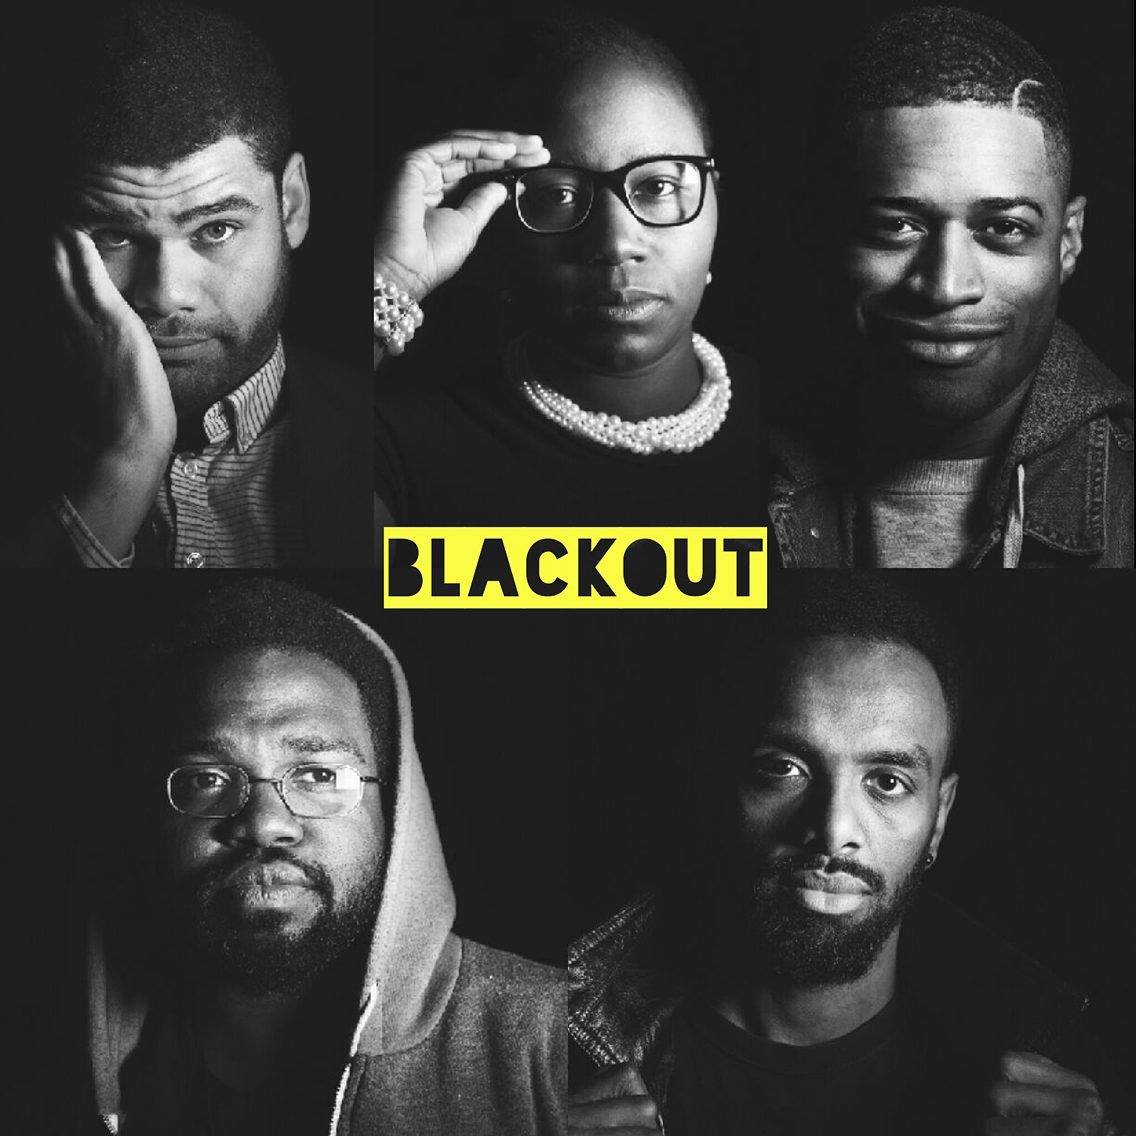 Blackout Podcast